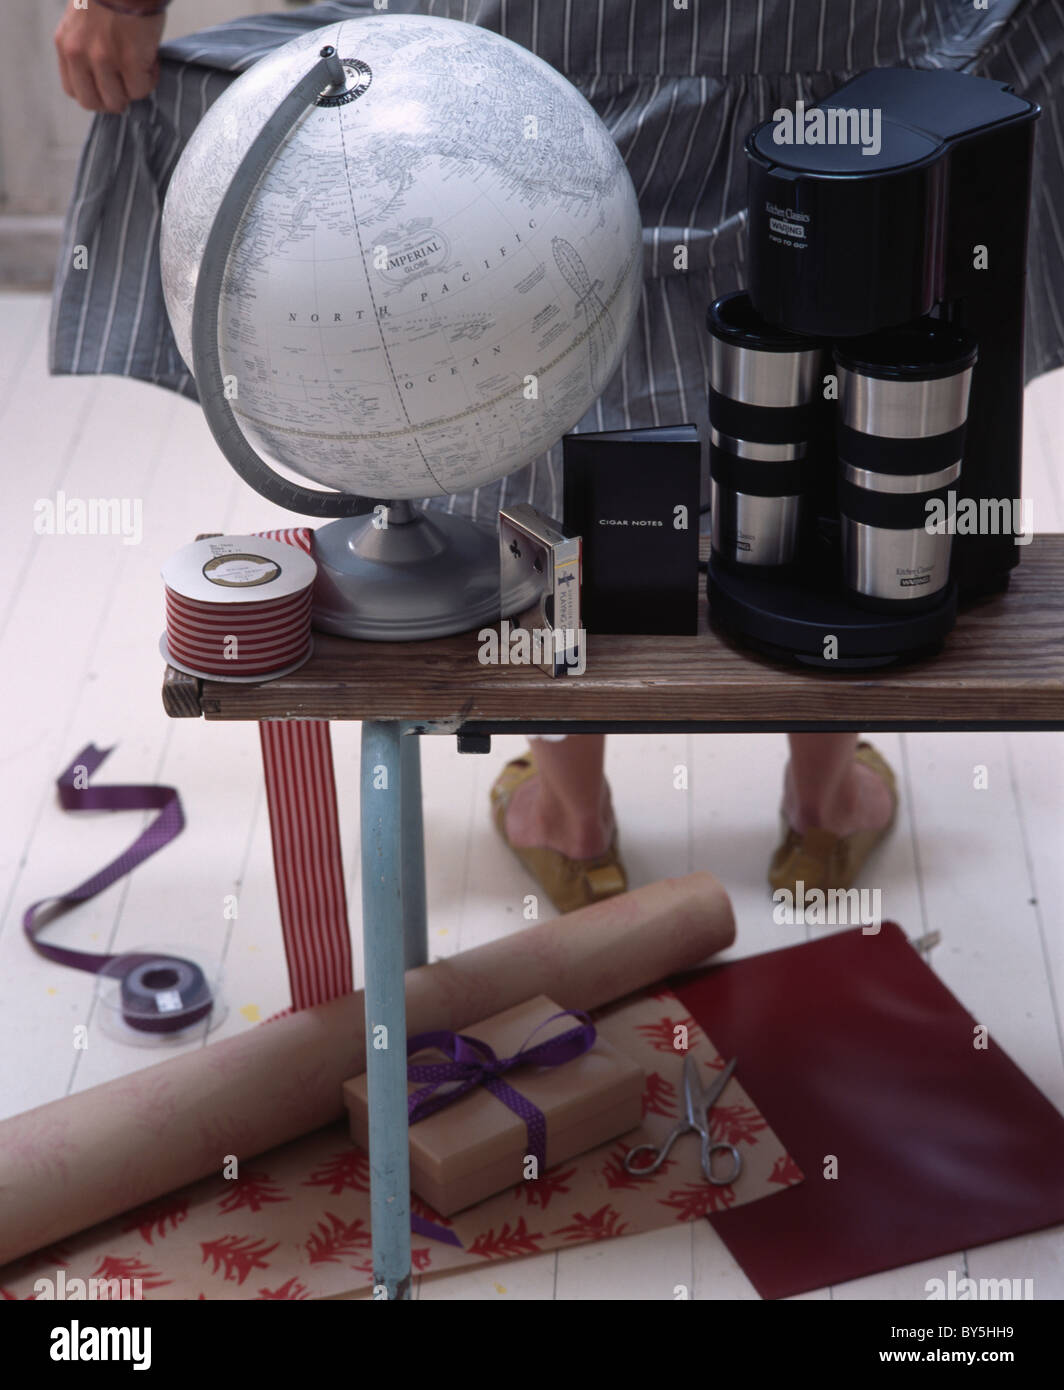 Nahaufnahme von Atlas Globus und Kaffeemaschine in Tabelle oben Rollen Geschenkpapier auf dem Boden Stockfoto